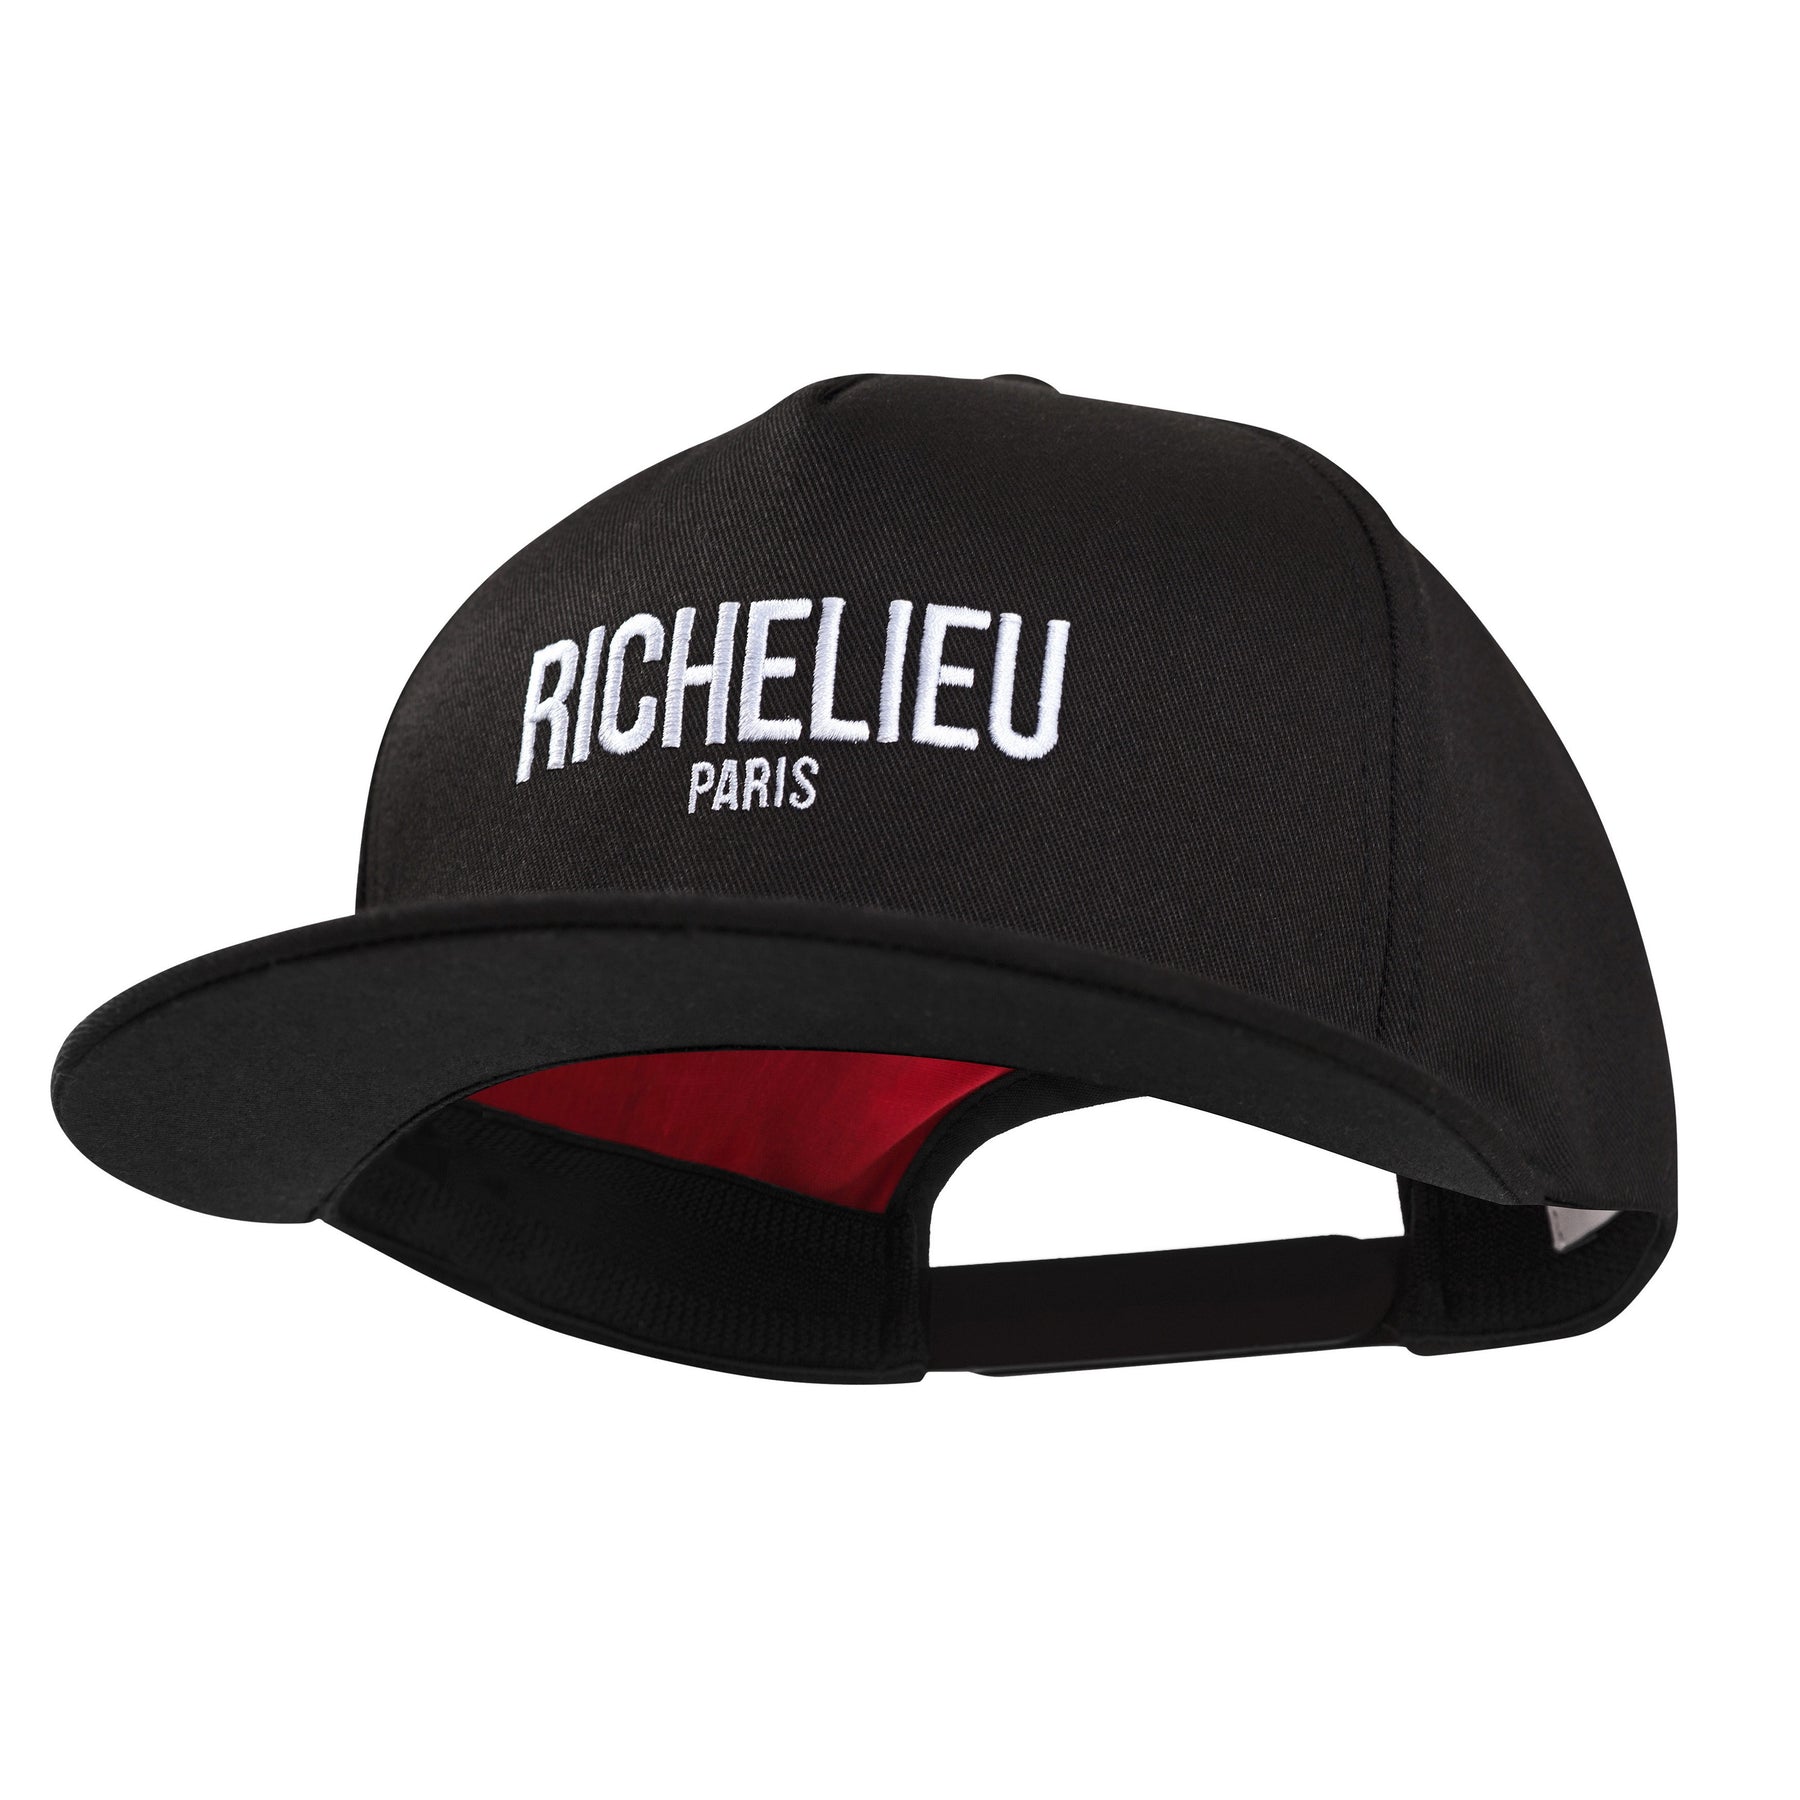 CLASSIC RICHELIEU CAP